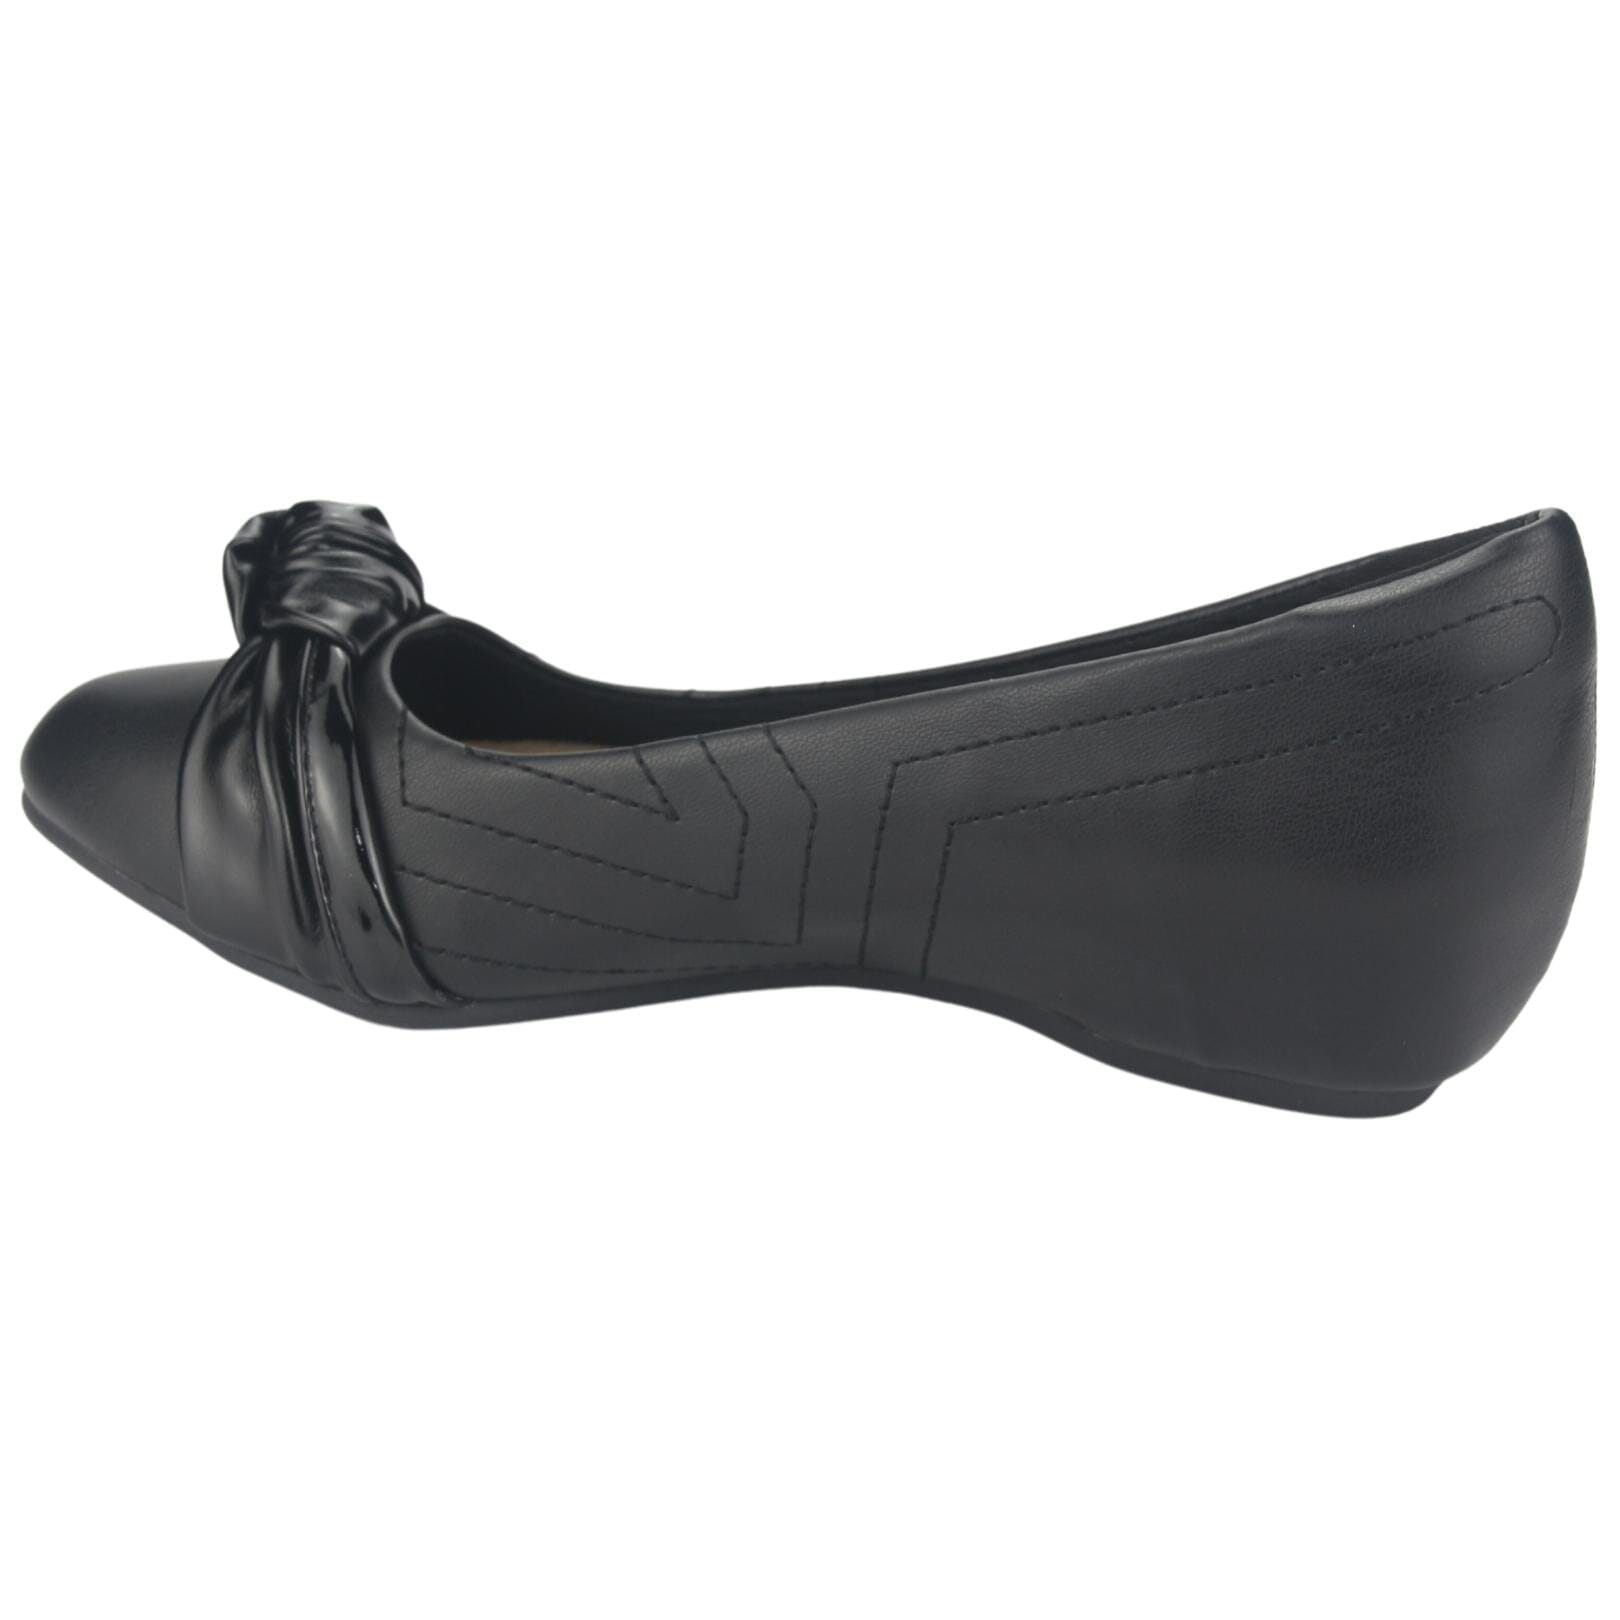 Zapato Chalada Mujer Demi-1 Negro Casual Tacones Bajos Chalada 